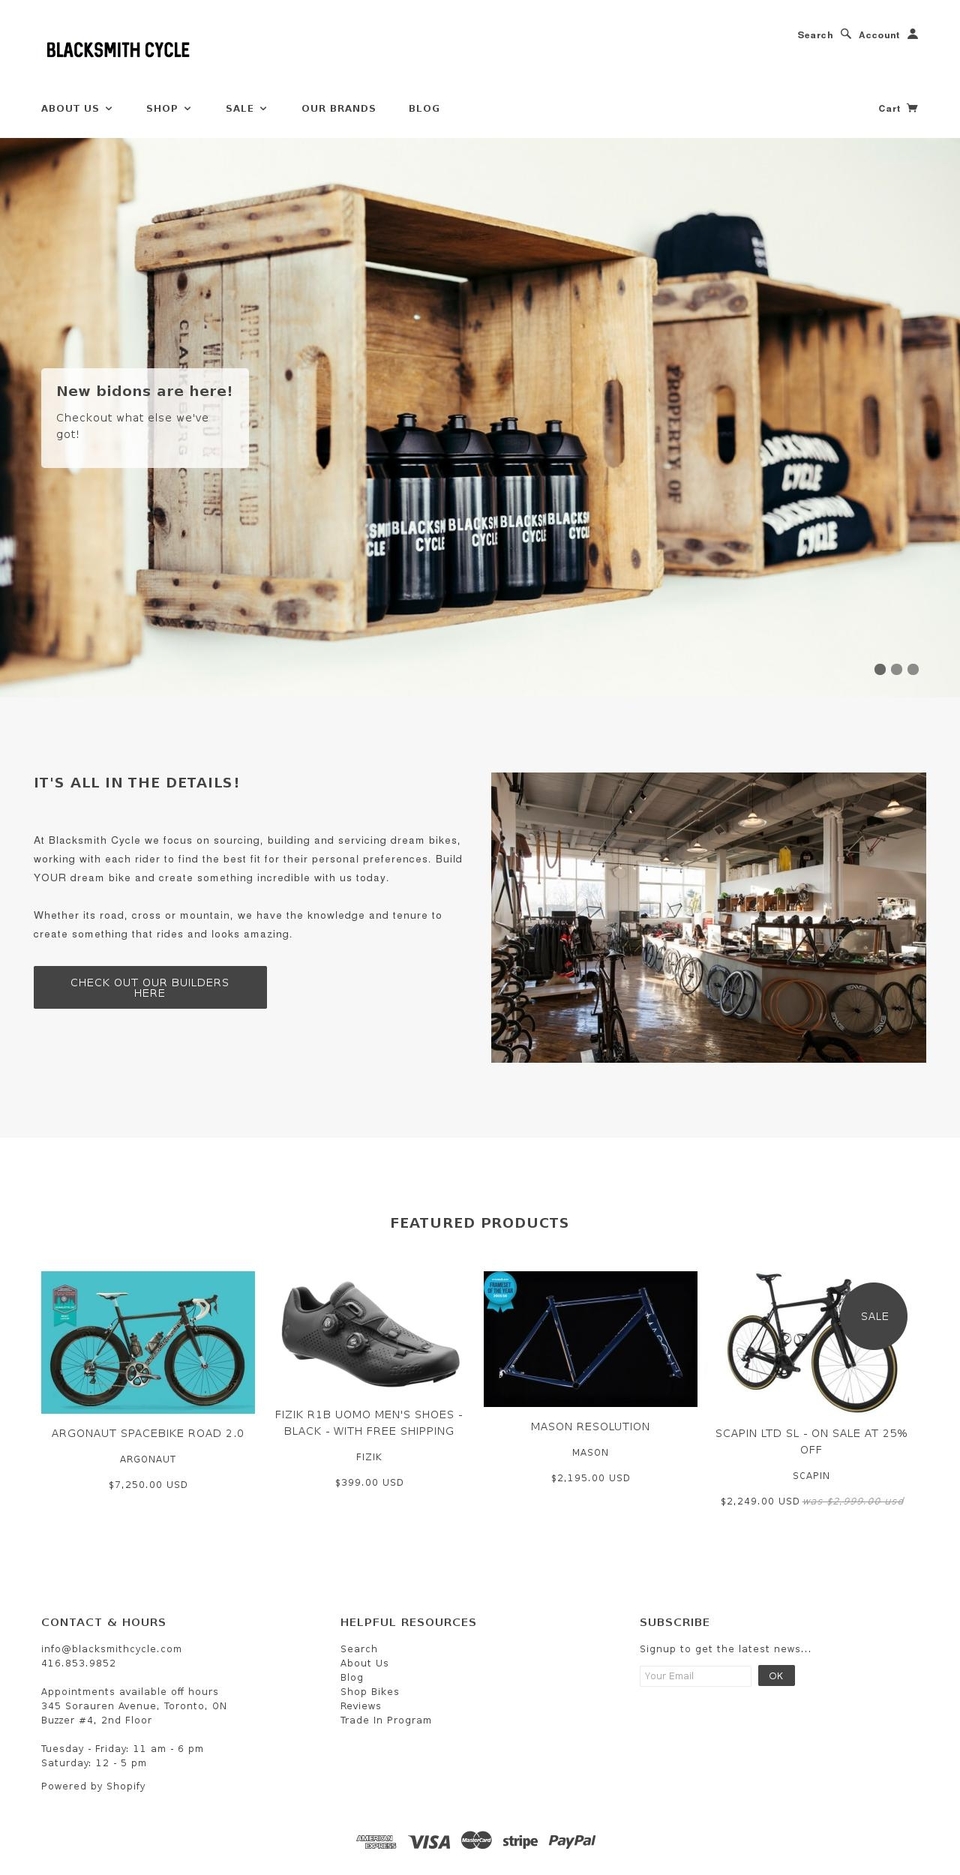 blacksmithcycle.com shopify website screenshot